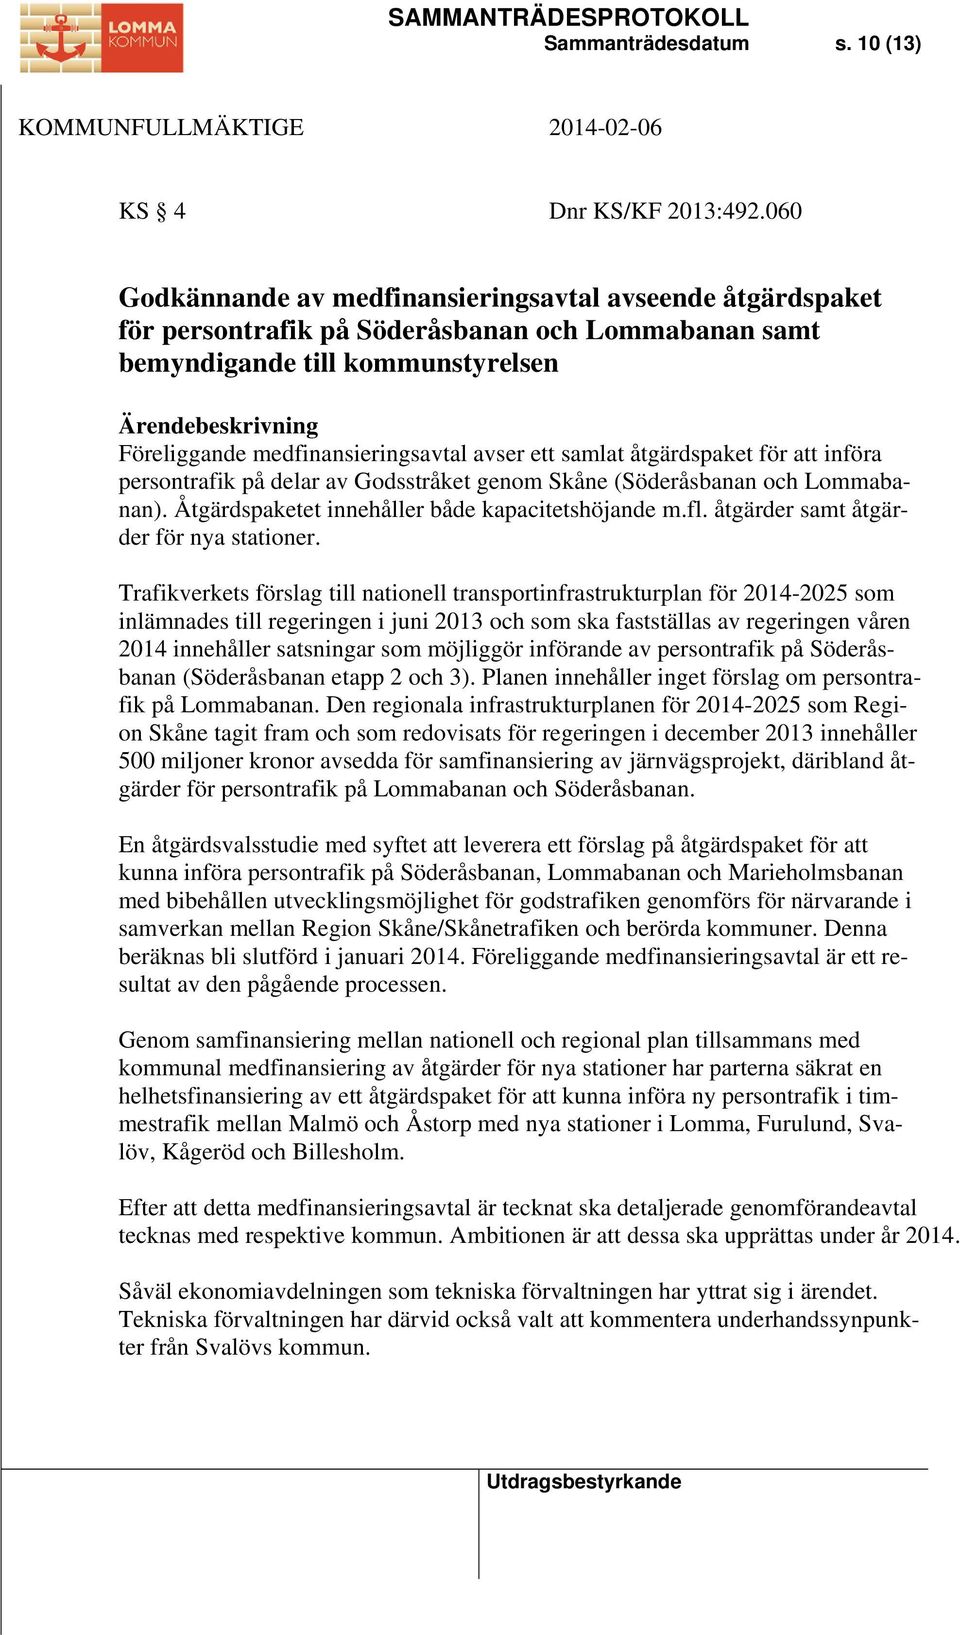 medfinansieringsavtal avser ett samlat åtgärdspaket för att införa persontrafik på delar av Godsstråket genom Skåne (Söderåsbanan och Lommabanan). Åtgärdspaketet innehåller både kapacitetshöjande m.